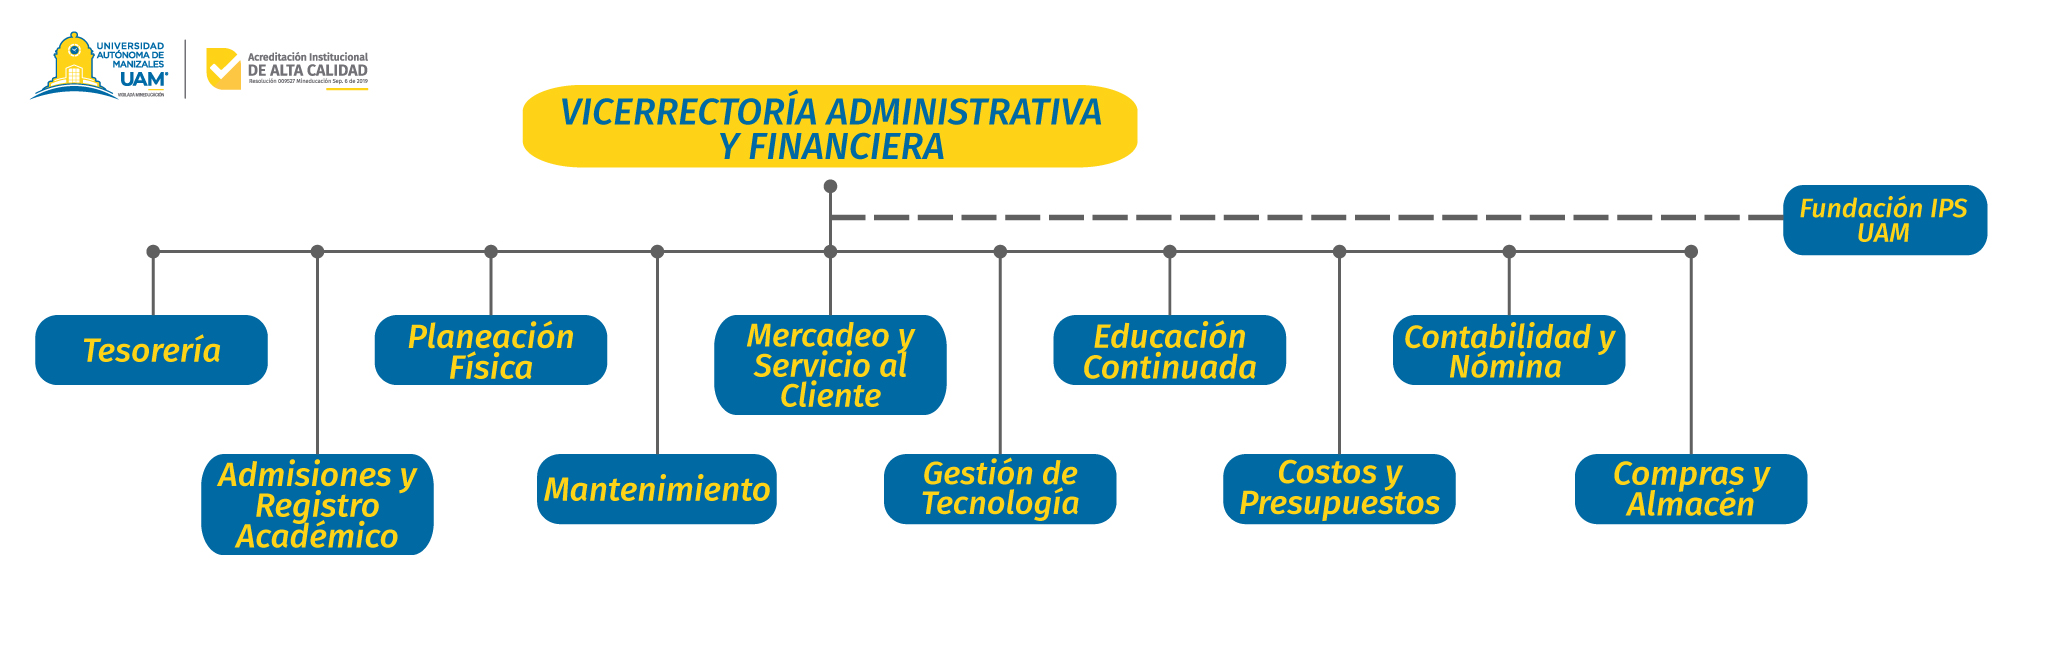 Vicerrectoria-administrativa-y-financiera